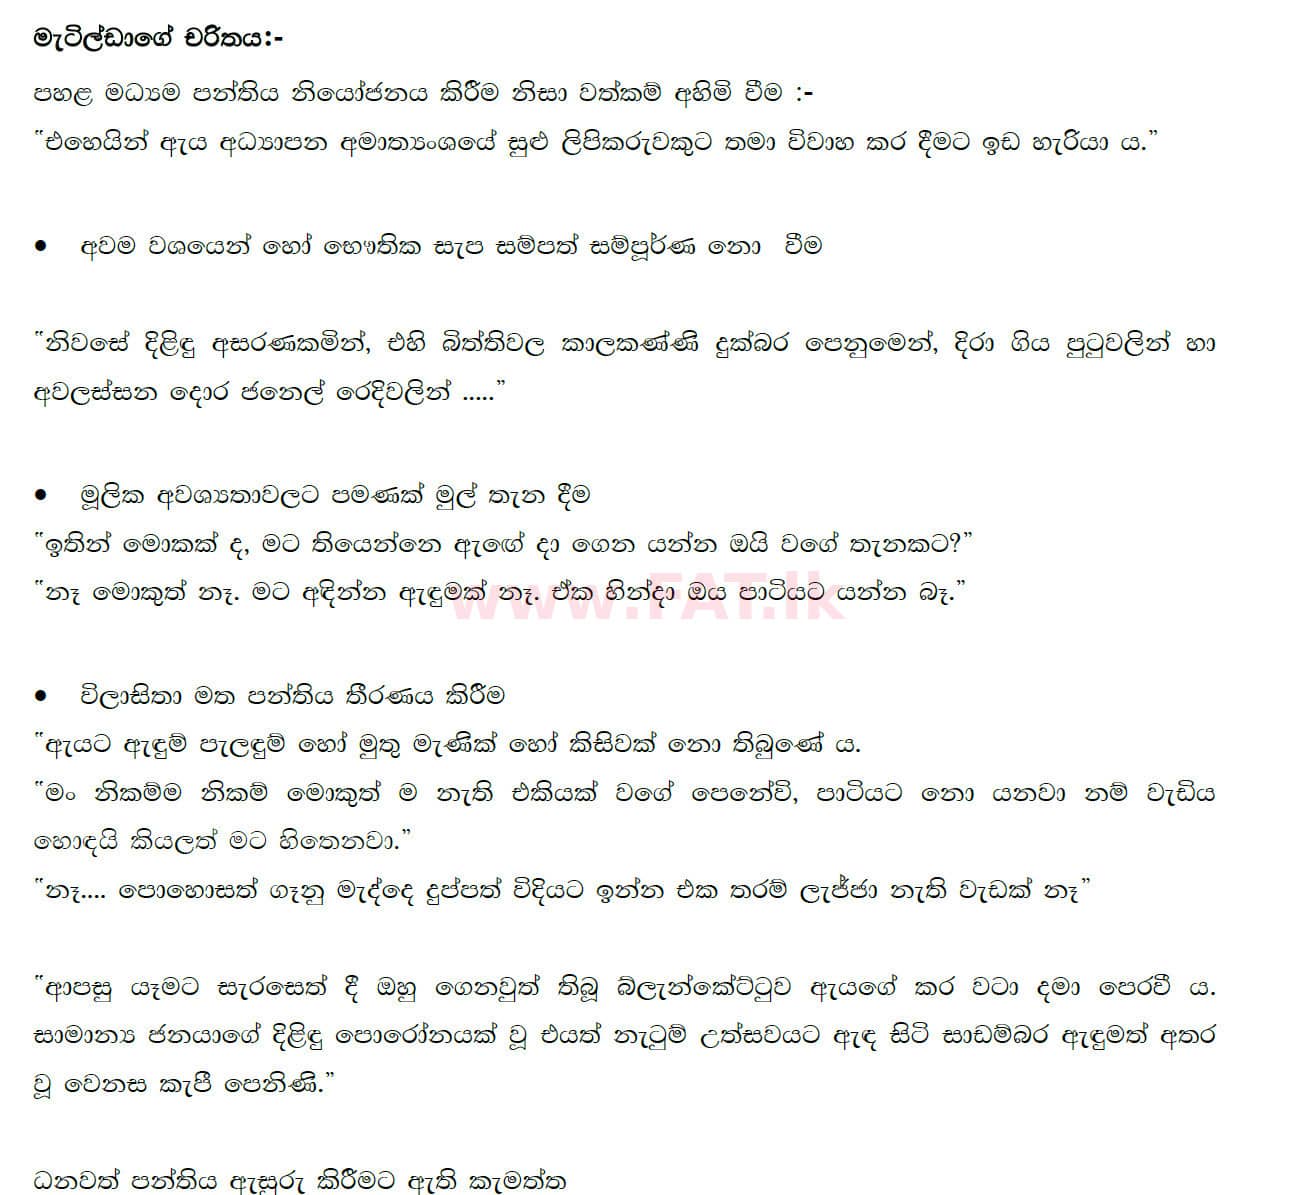 உள்ளூர் பாடத்திட்டம் : சாதாரண நிலை (சா/த) சிங்கள இலக்கியம் - 2020 மார்ச் - தாள்கள் III (සිංහල மொழிமூலம்) 4 4881